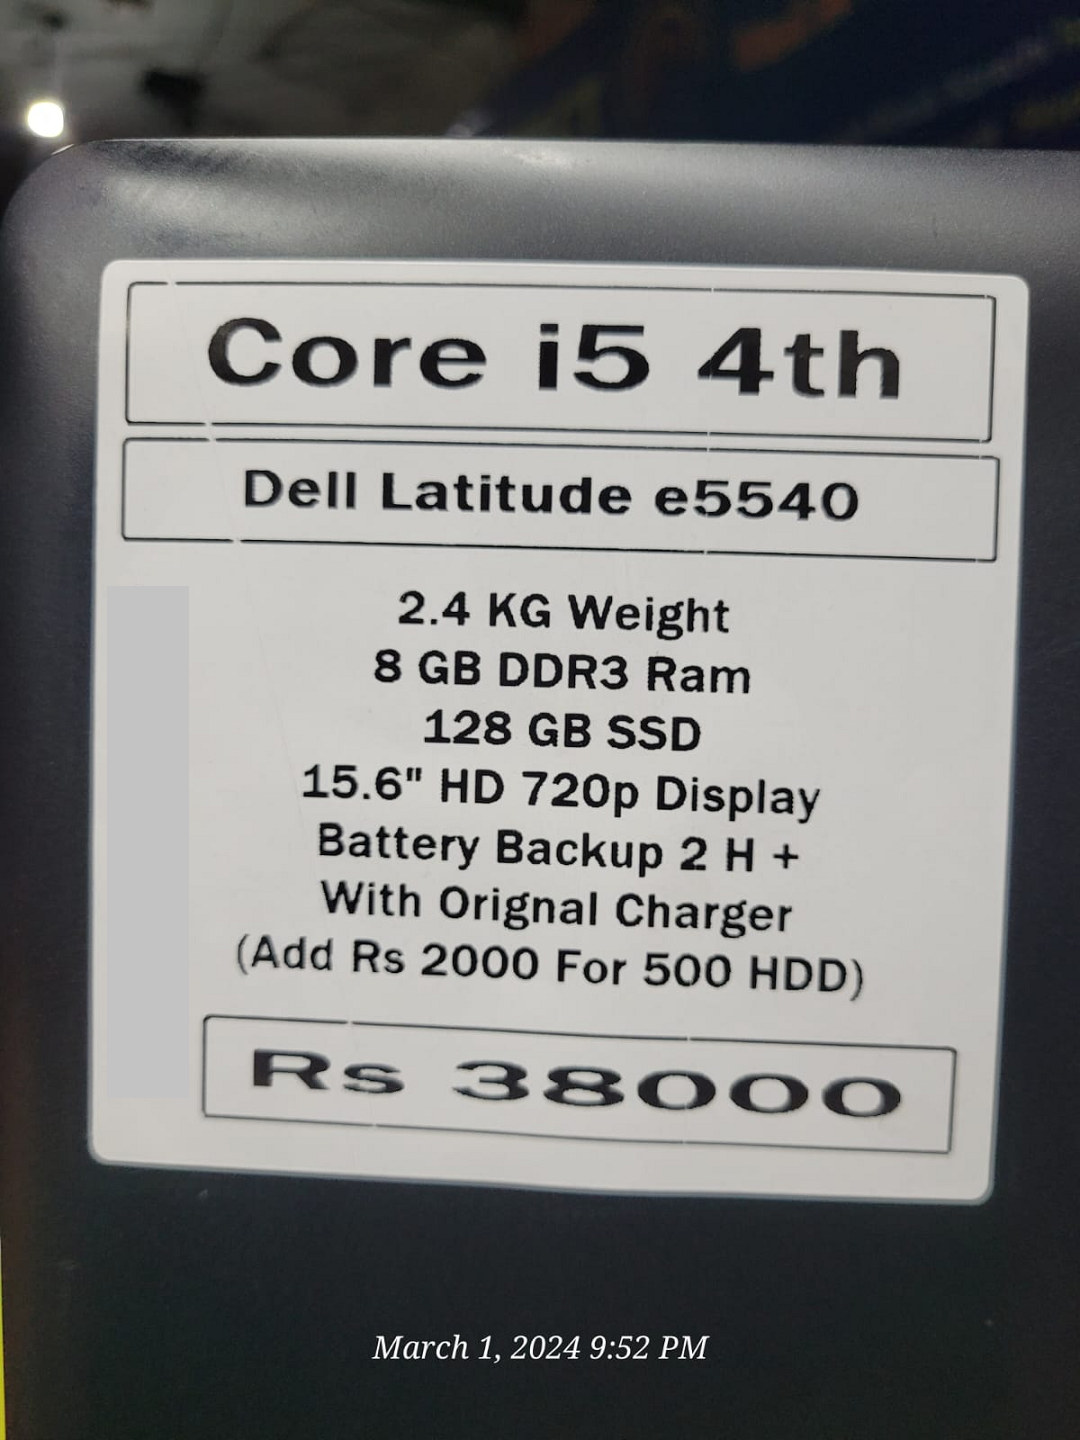 Dell latitude e5540 i5 4thgeneration price in pakistan